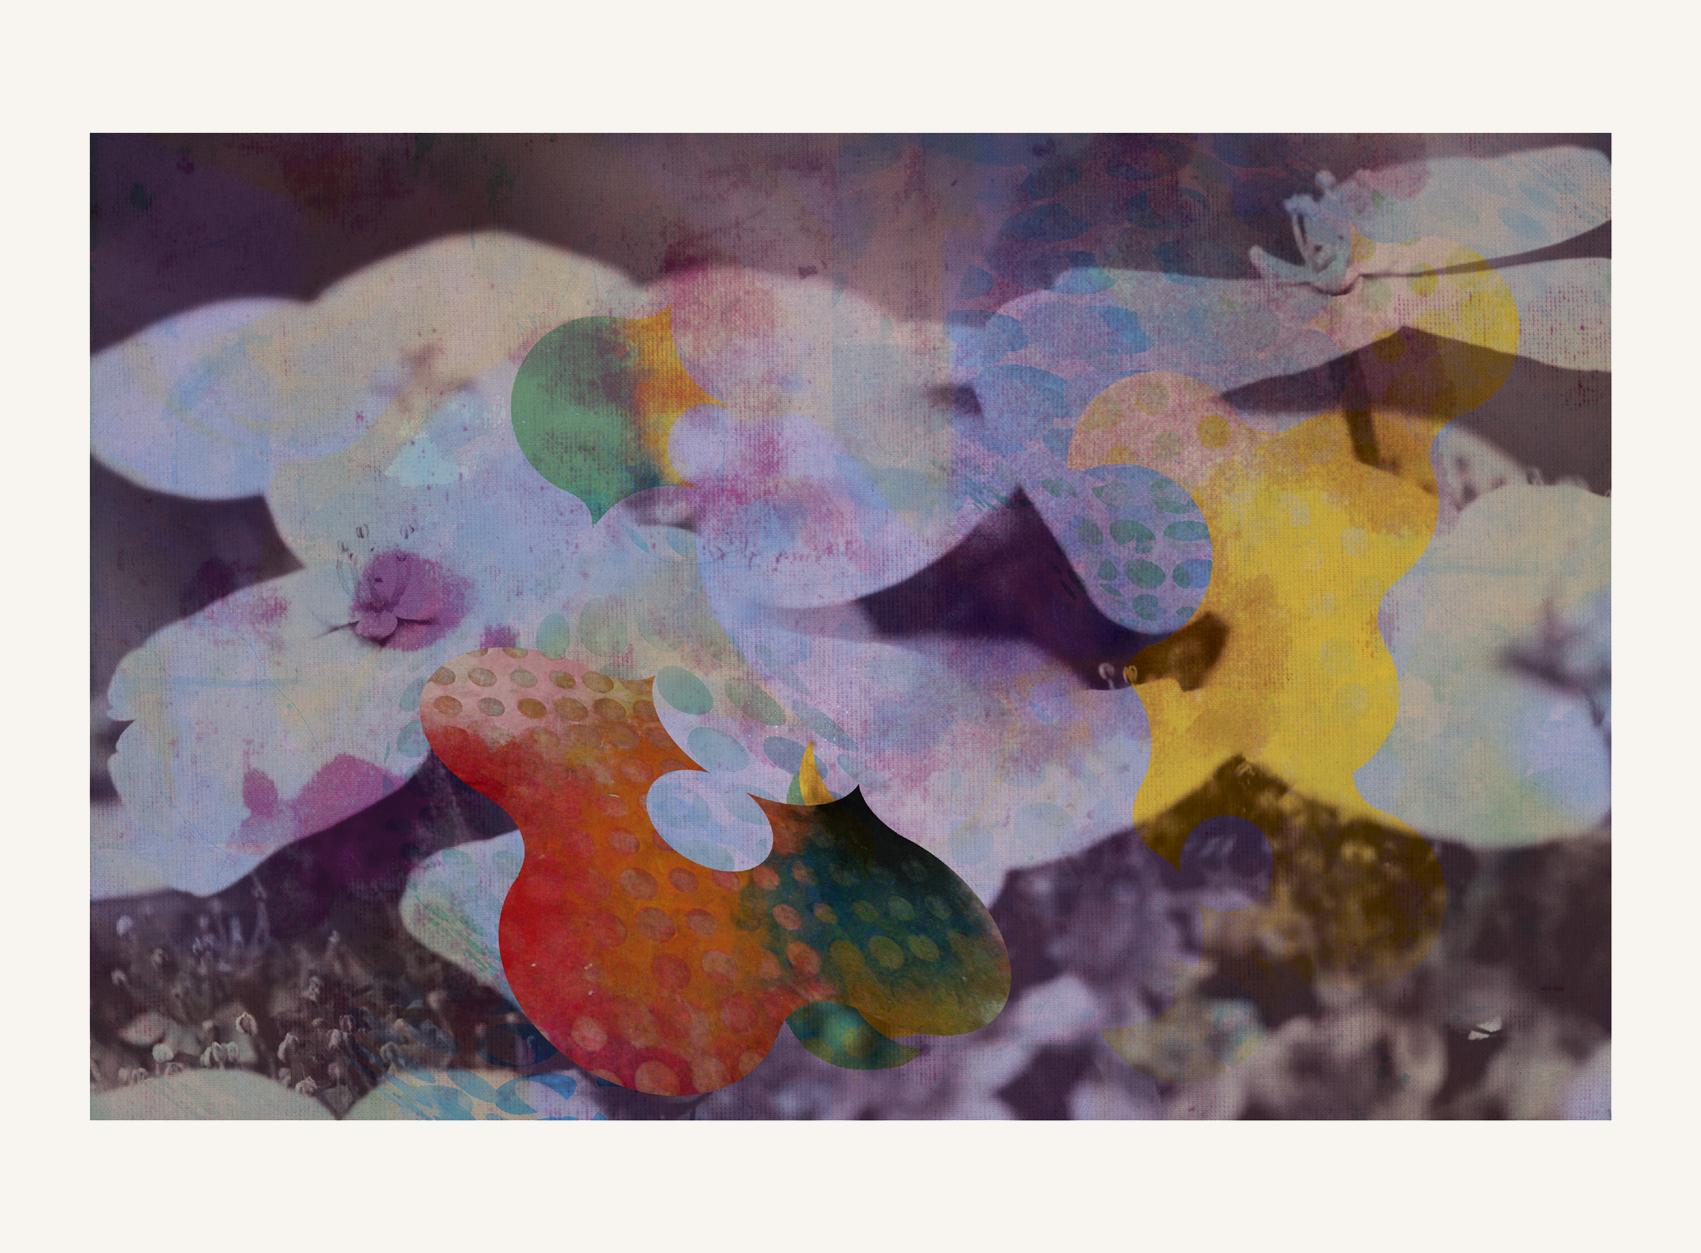 Francisco Nicolás Abstract Print – Blumen 11 - Zeitgenössisch, Abstrakt, Expressionistisch, Moderne, Pop Art, Surrealistisch, 